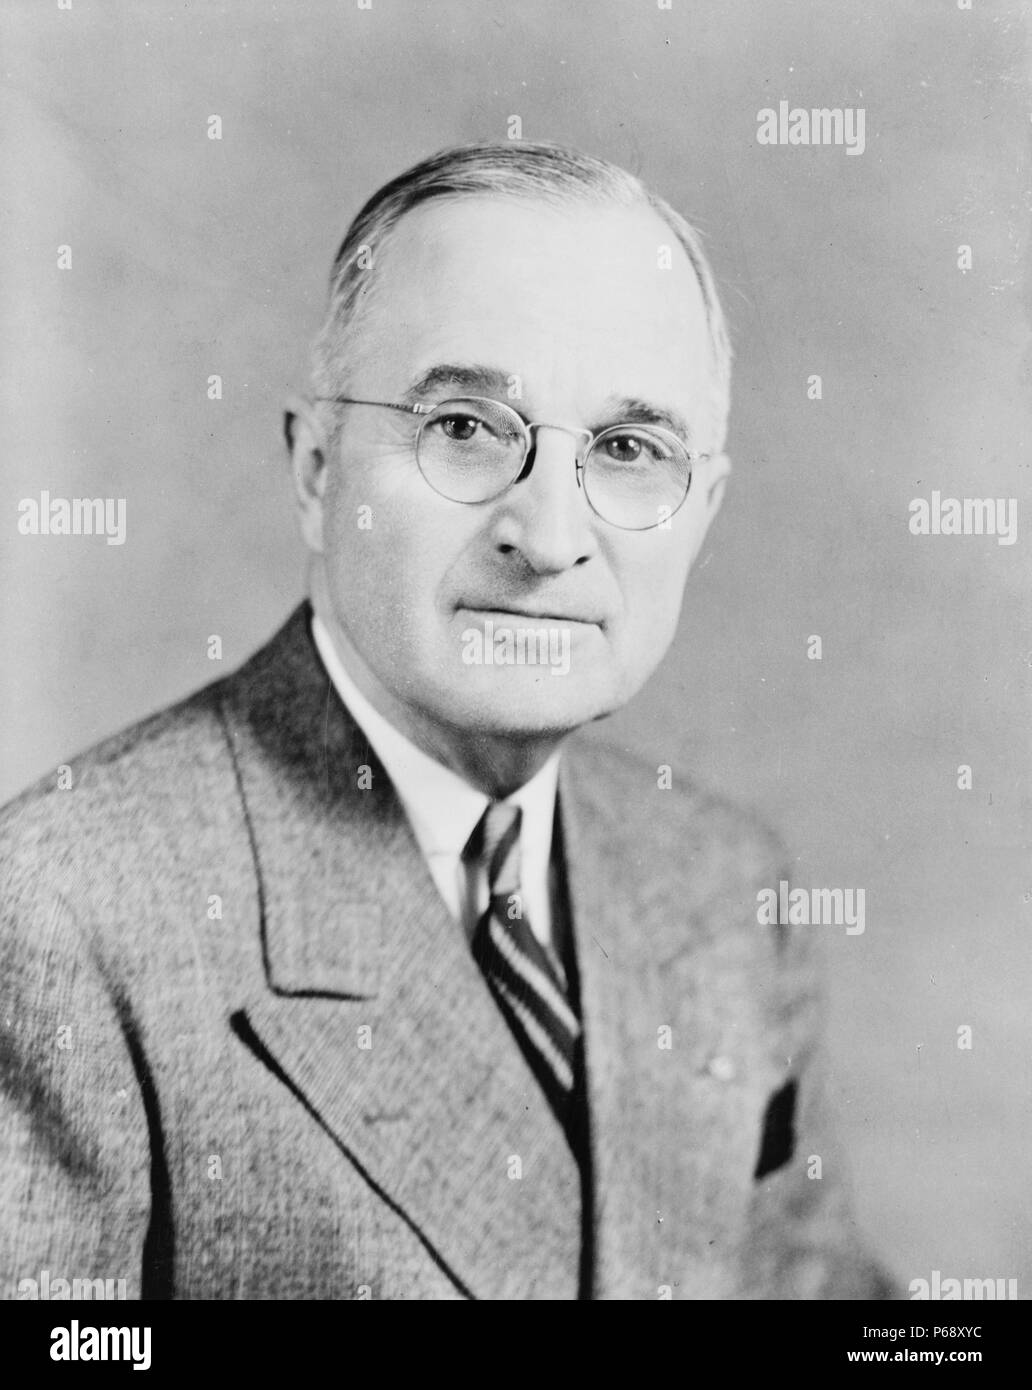 Foto von Präsident Harry S. Truman (1884-1972) 33. Präsident der Vereinigten Staaten. Datiert 1945 Stockfoto